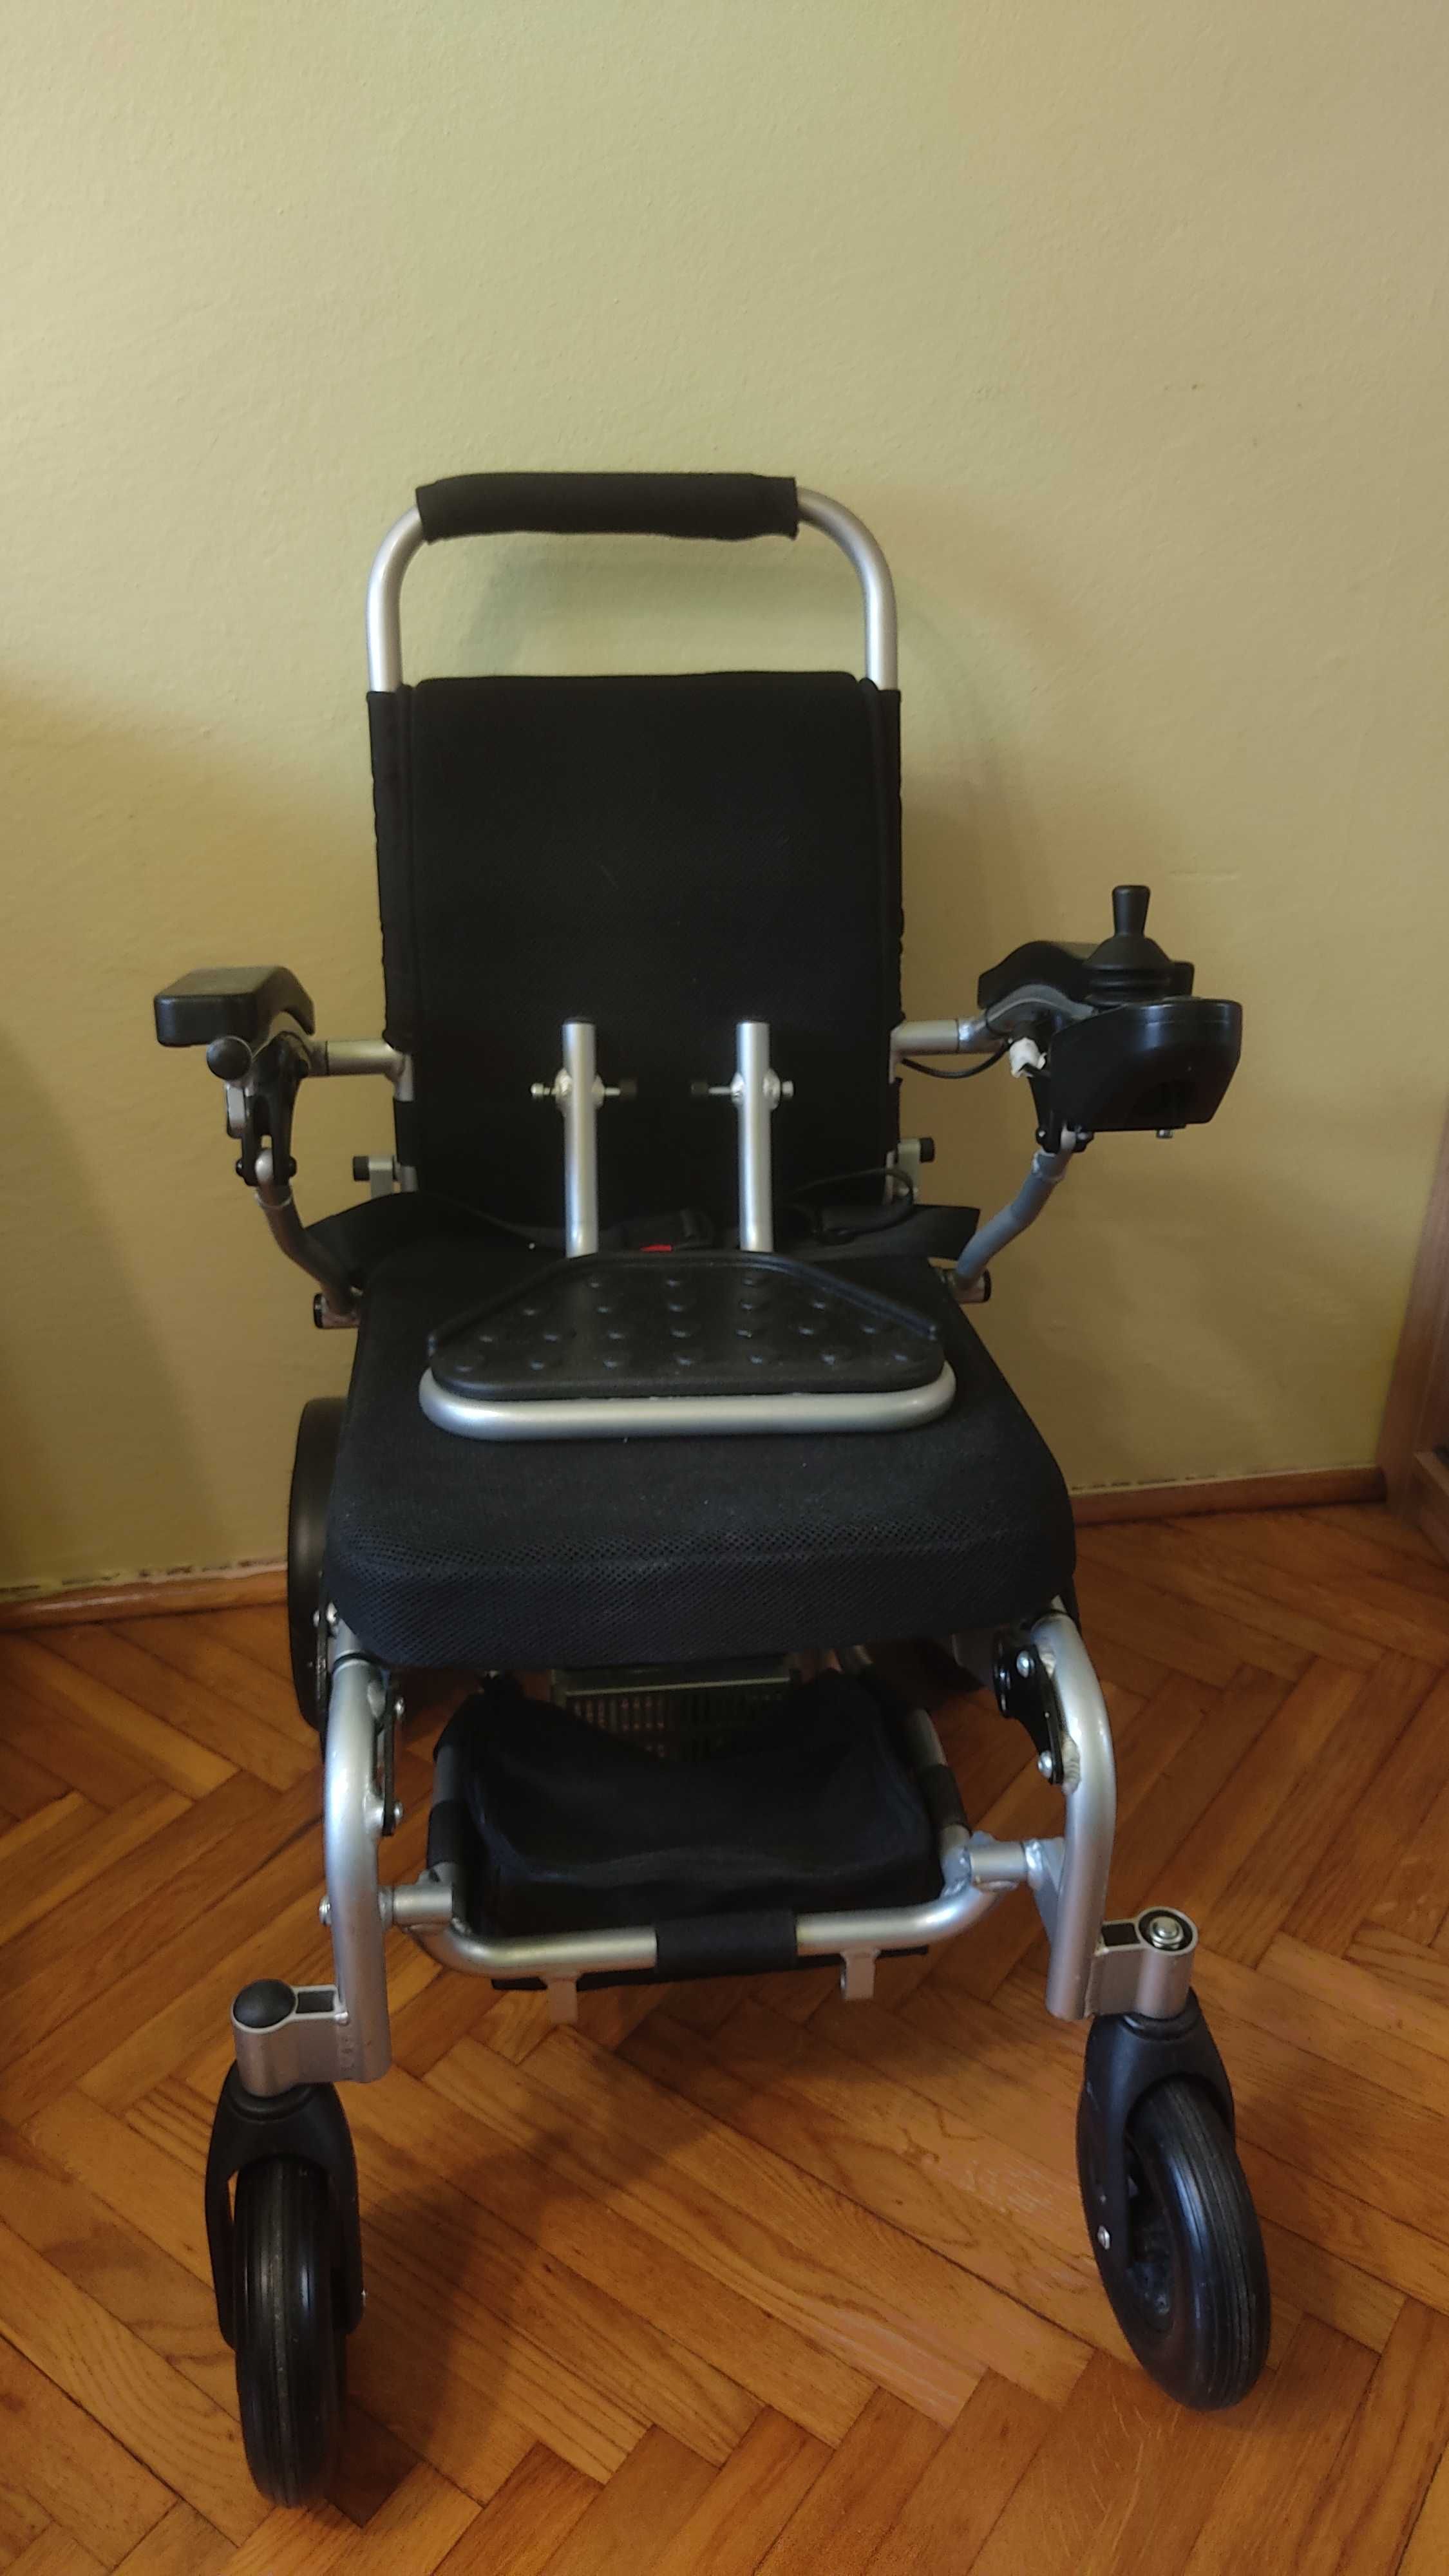 Inwalidzki wózek elektryczny FREEDOM CHAIR, model A07